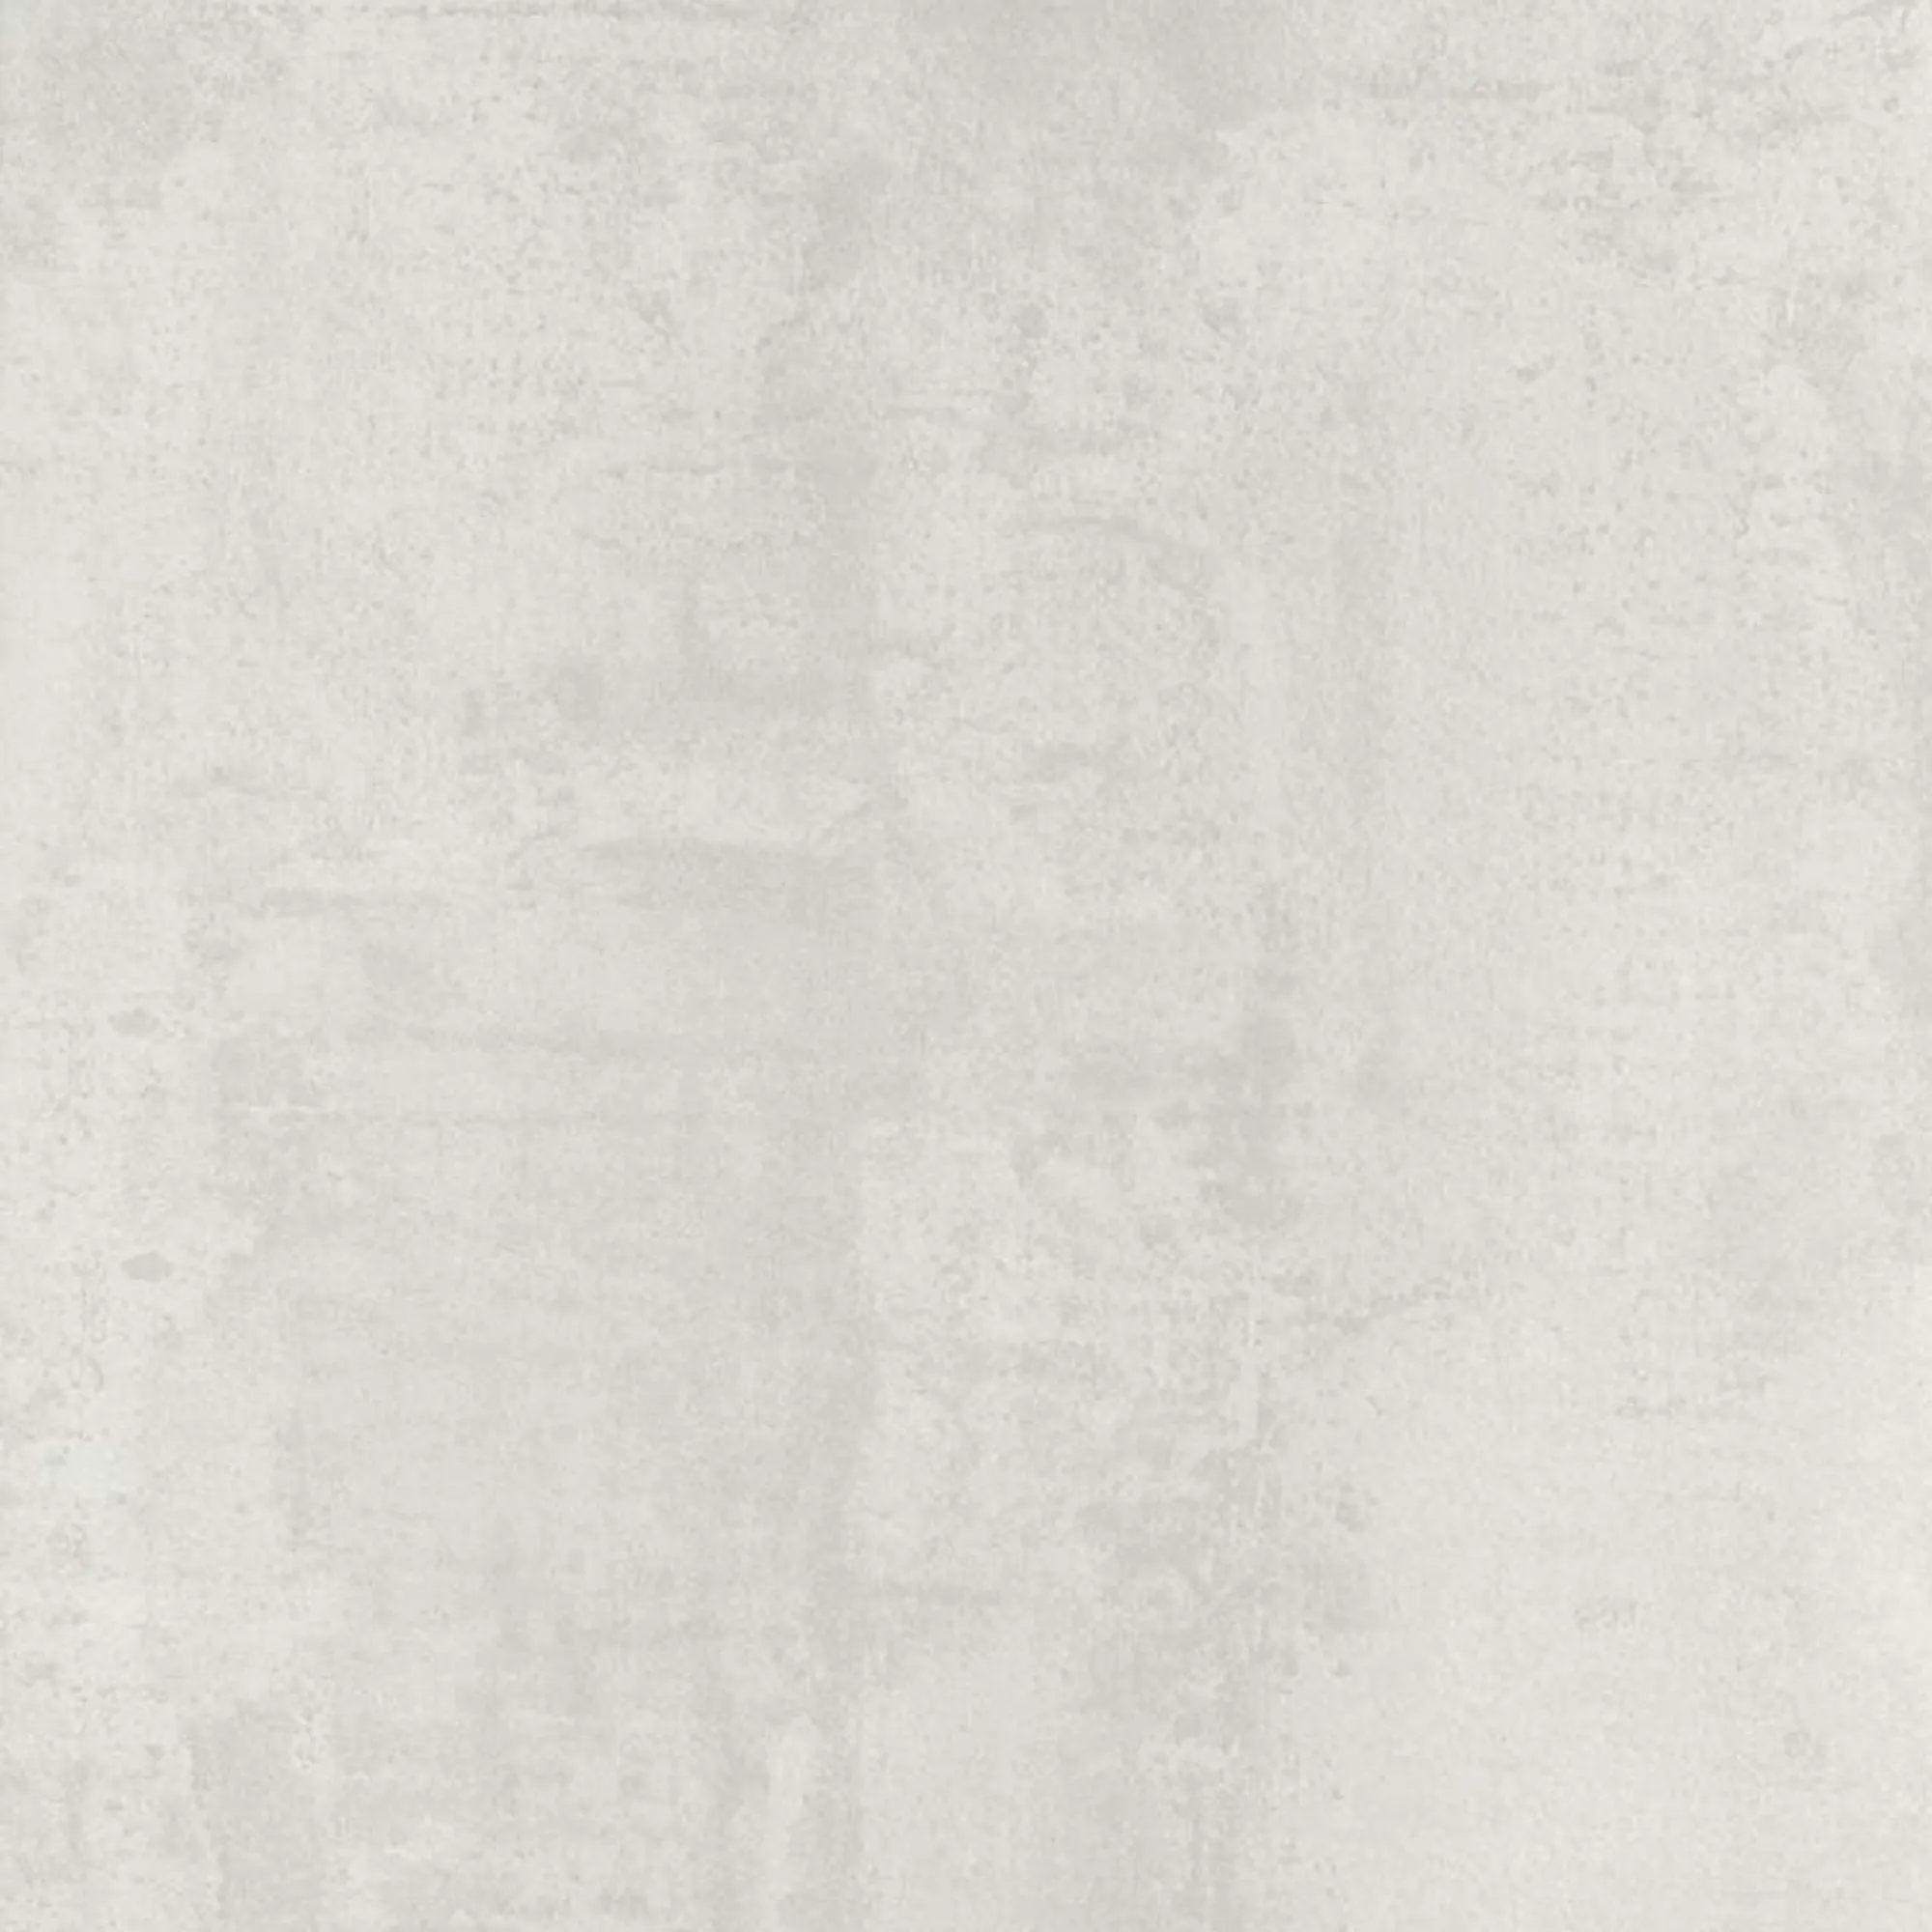 Πλακάκια Δαπέδου Herion Μεταλλική Εμφάνιση Lappato Blanco 60x60cm